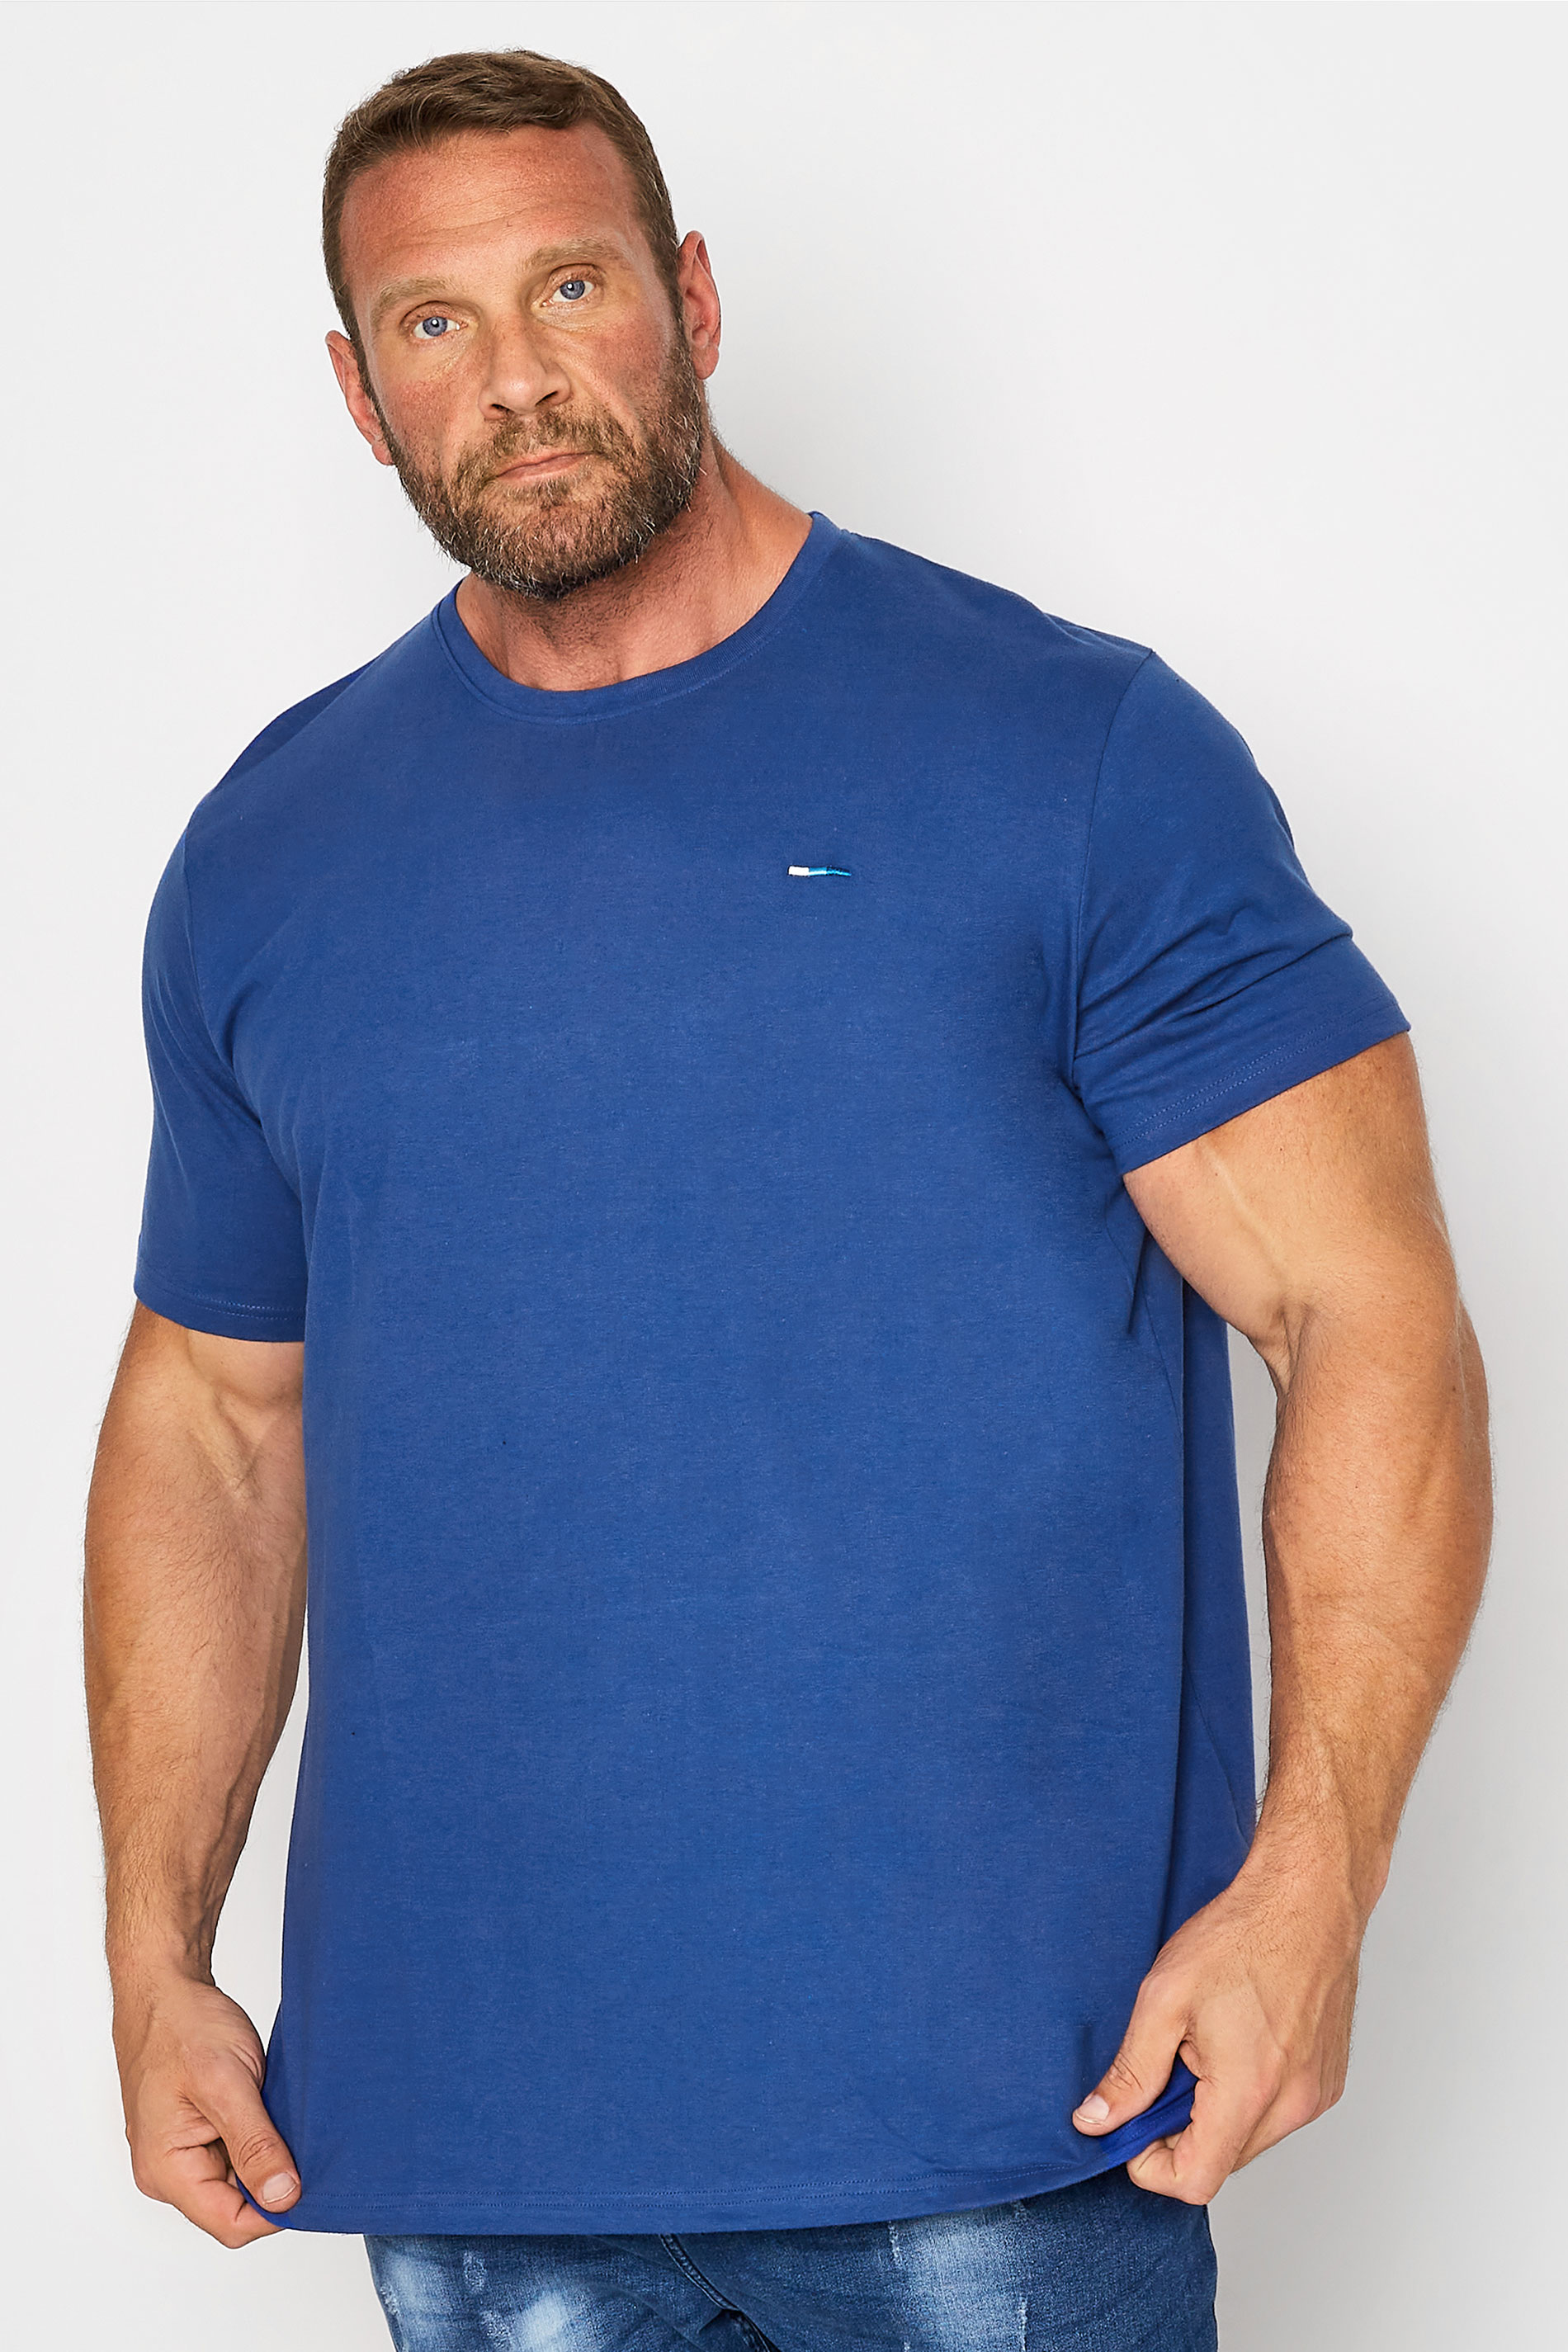 BadRhino Bright Blue Core T-Shirt | BadRhino